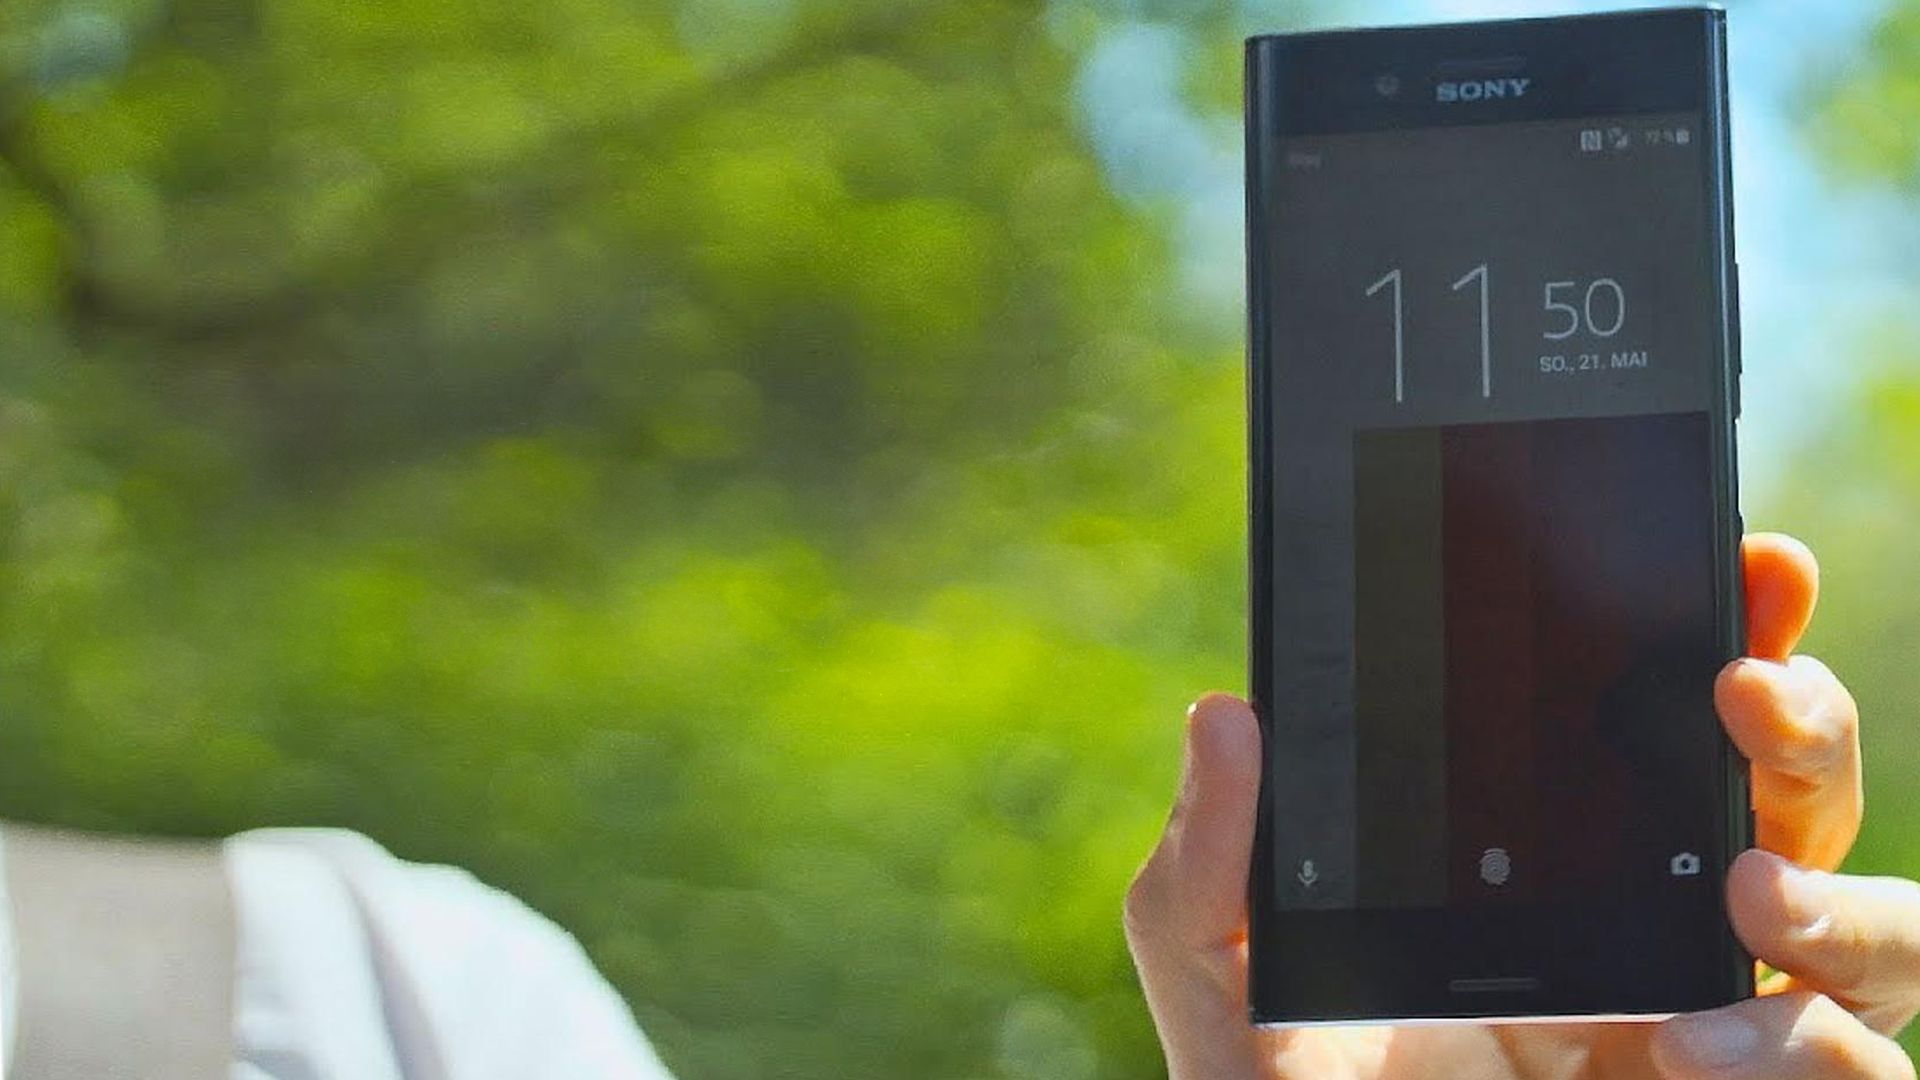 960 Bilder/Sekunde mit dem HANDY aufnehmen?! - Sony Xperia XZ Premium - Review